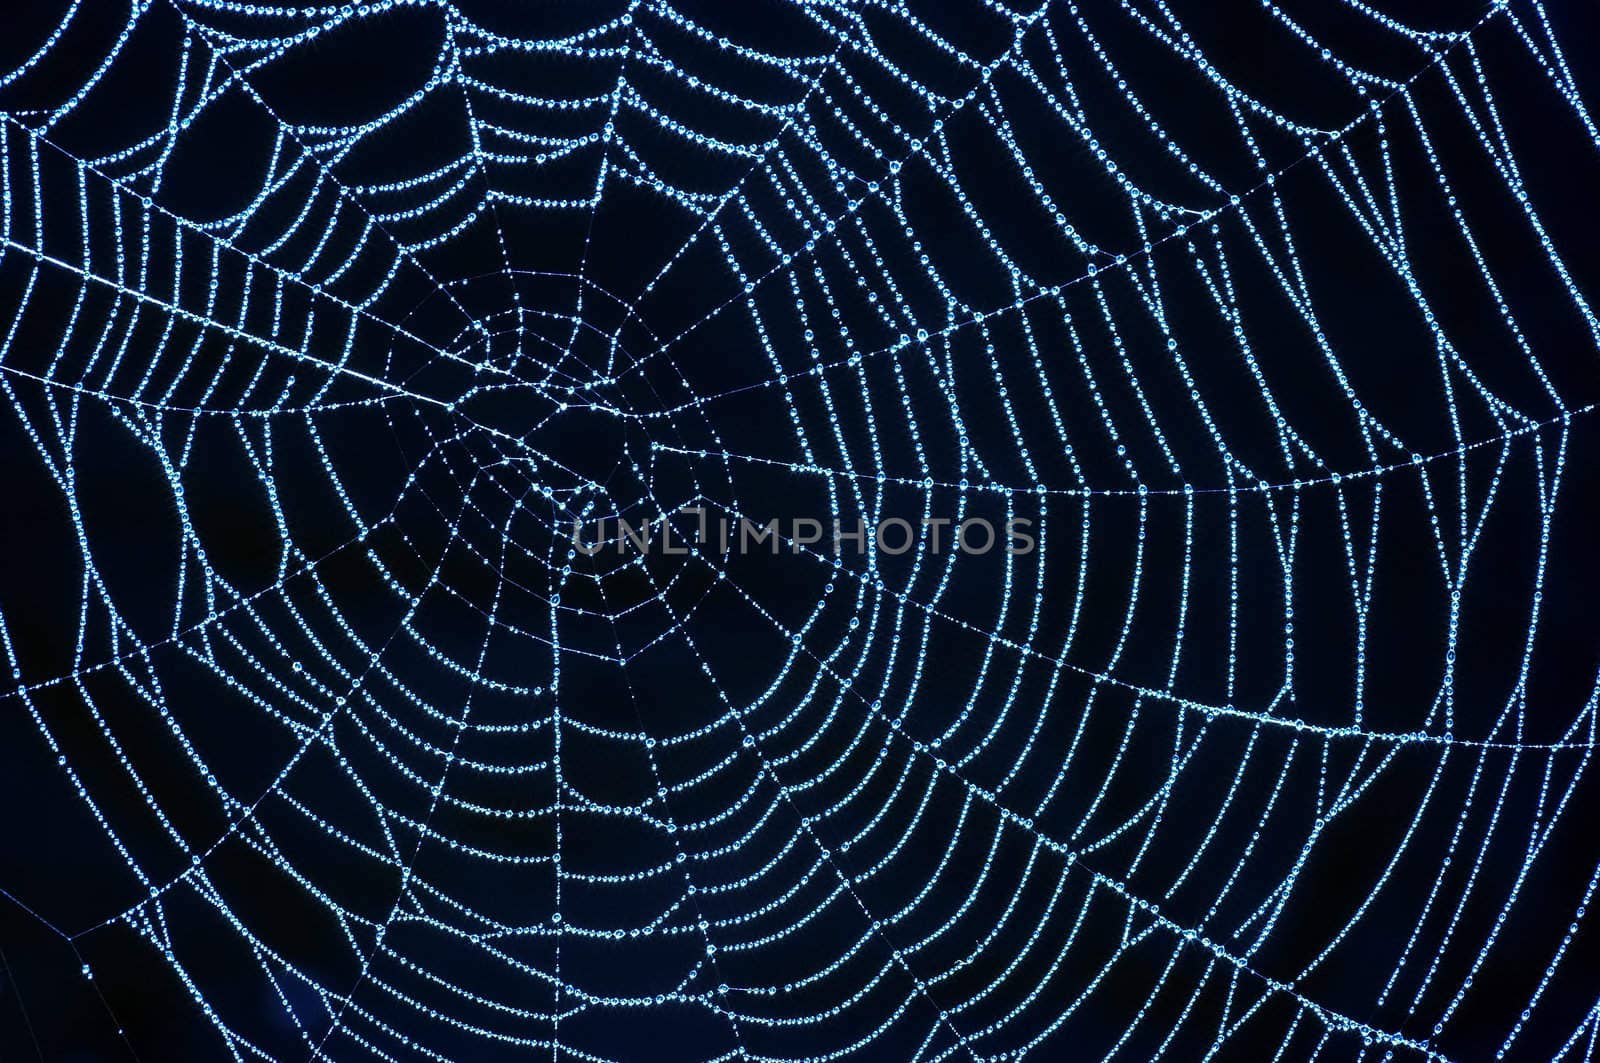 cobweb with glistening dewdrops by Mibuch